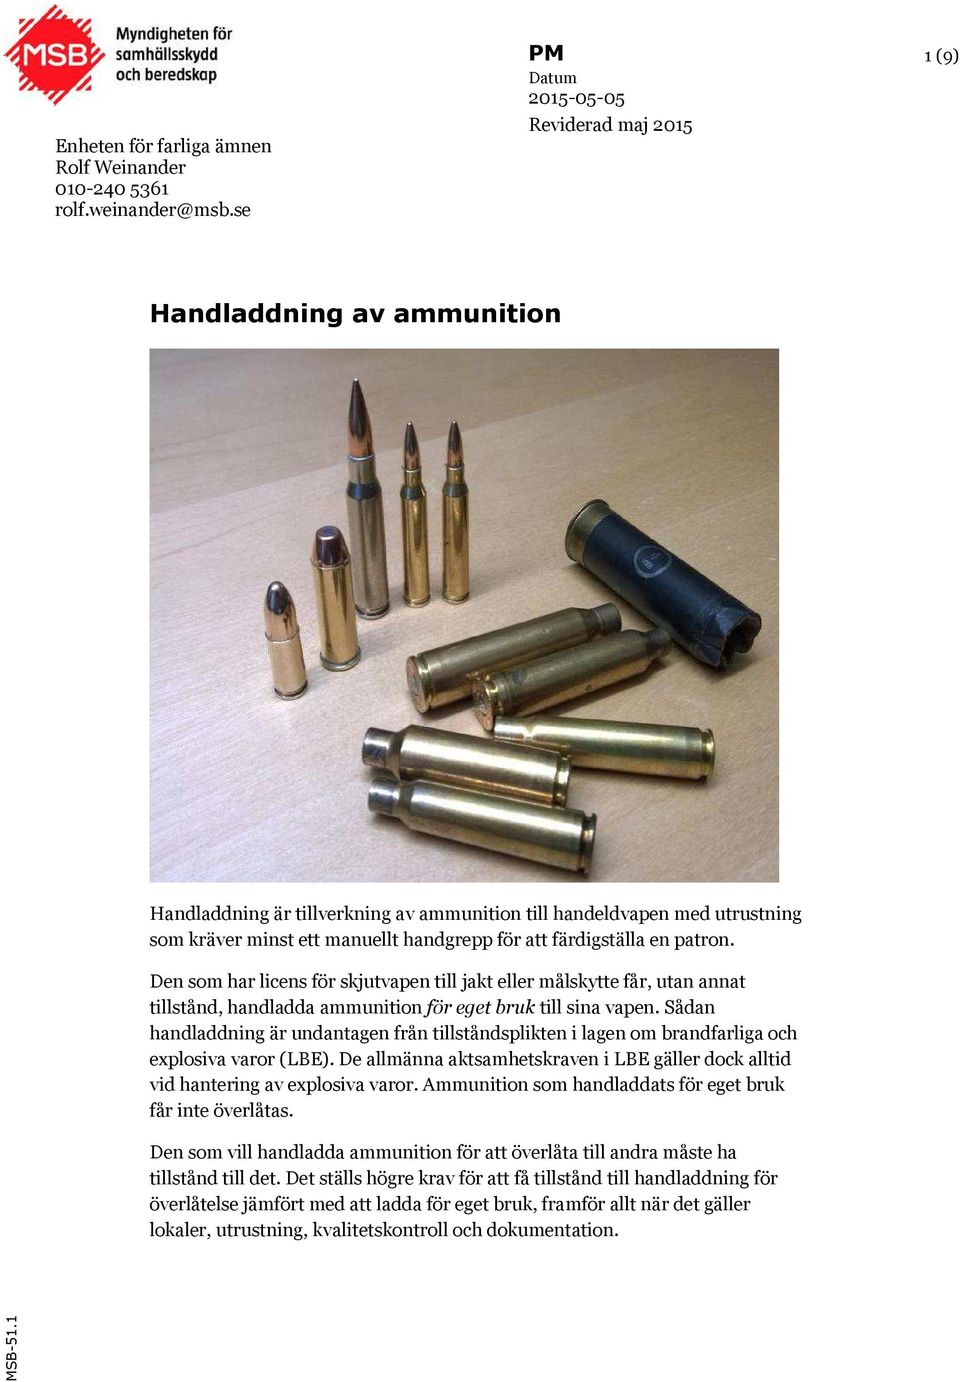 Den som har licens för skjutvapen till jakt eller målskytte får, utan annat tillstånd, handladda ammunition för eget bruk till sina vapen.